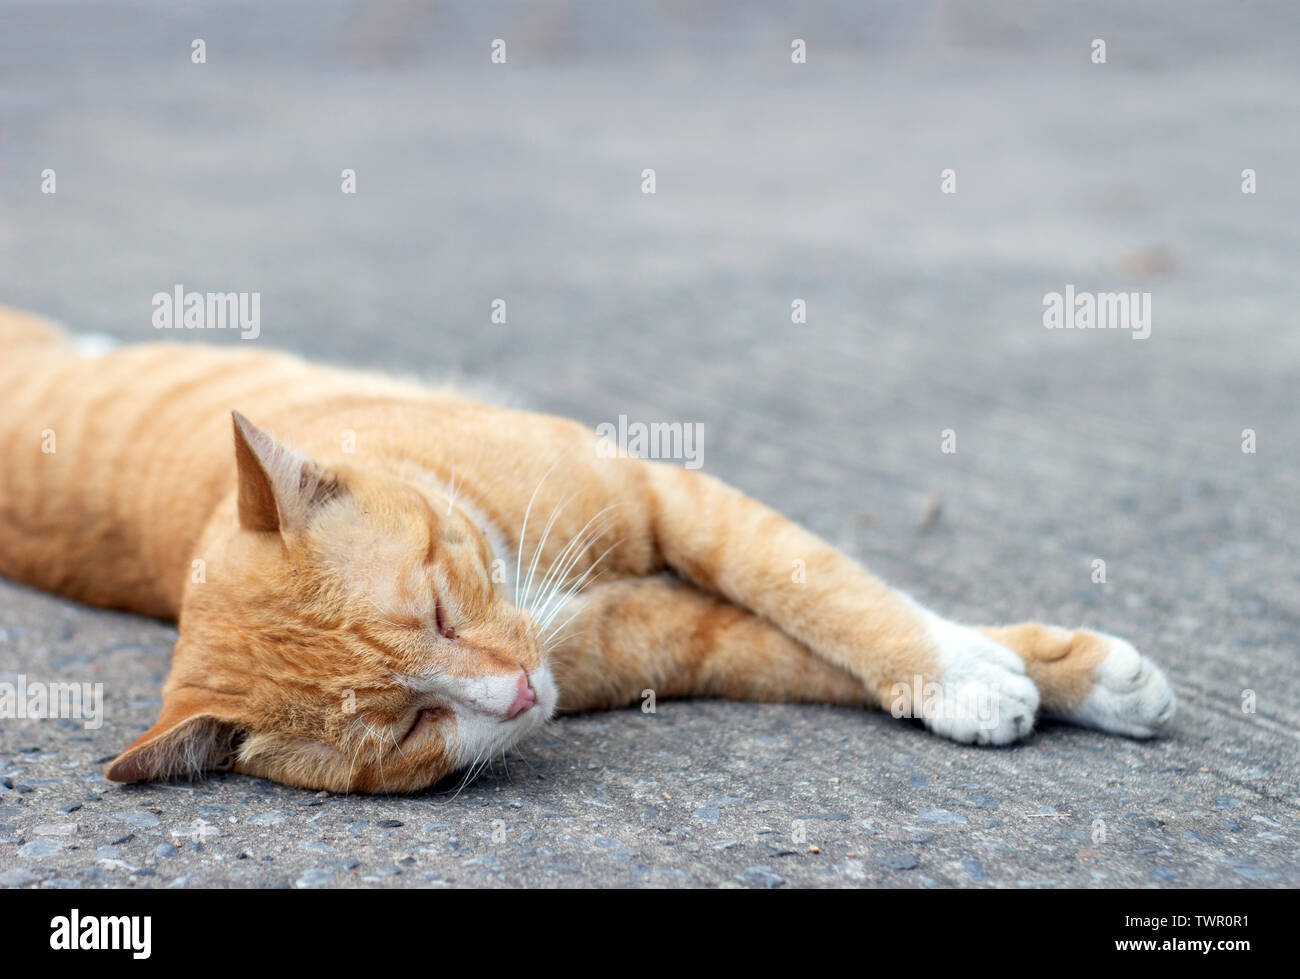 Lazy cat dormir sur rue. Concept photo animal Banque D'Images